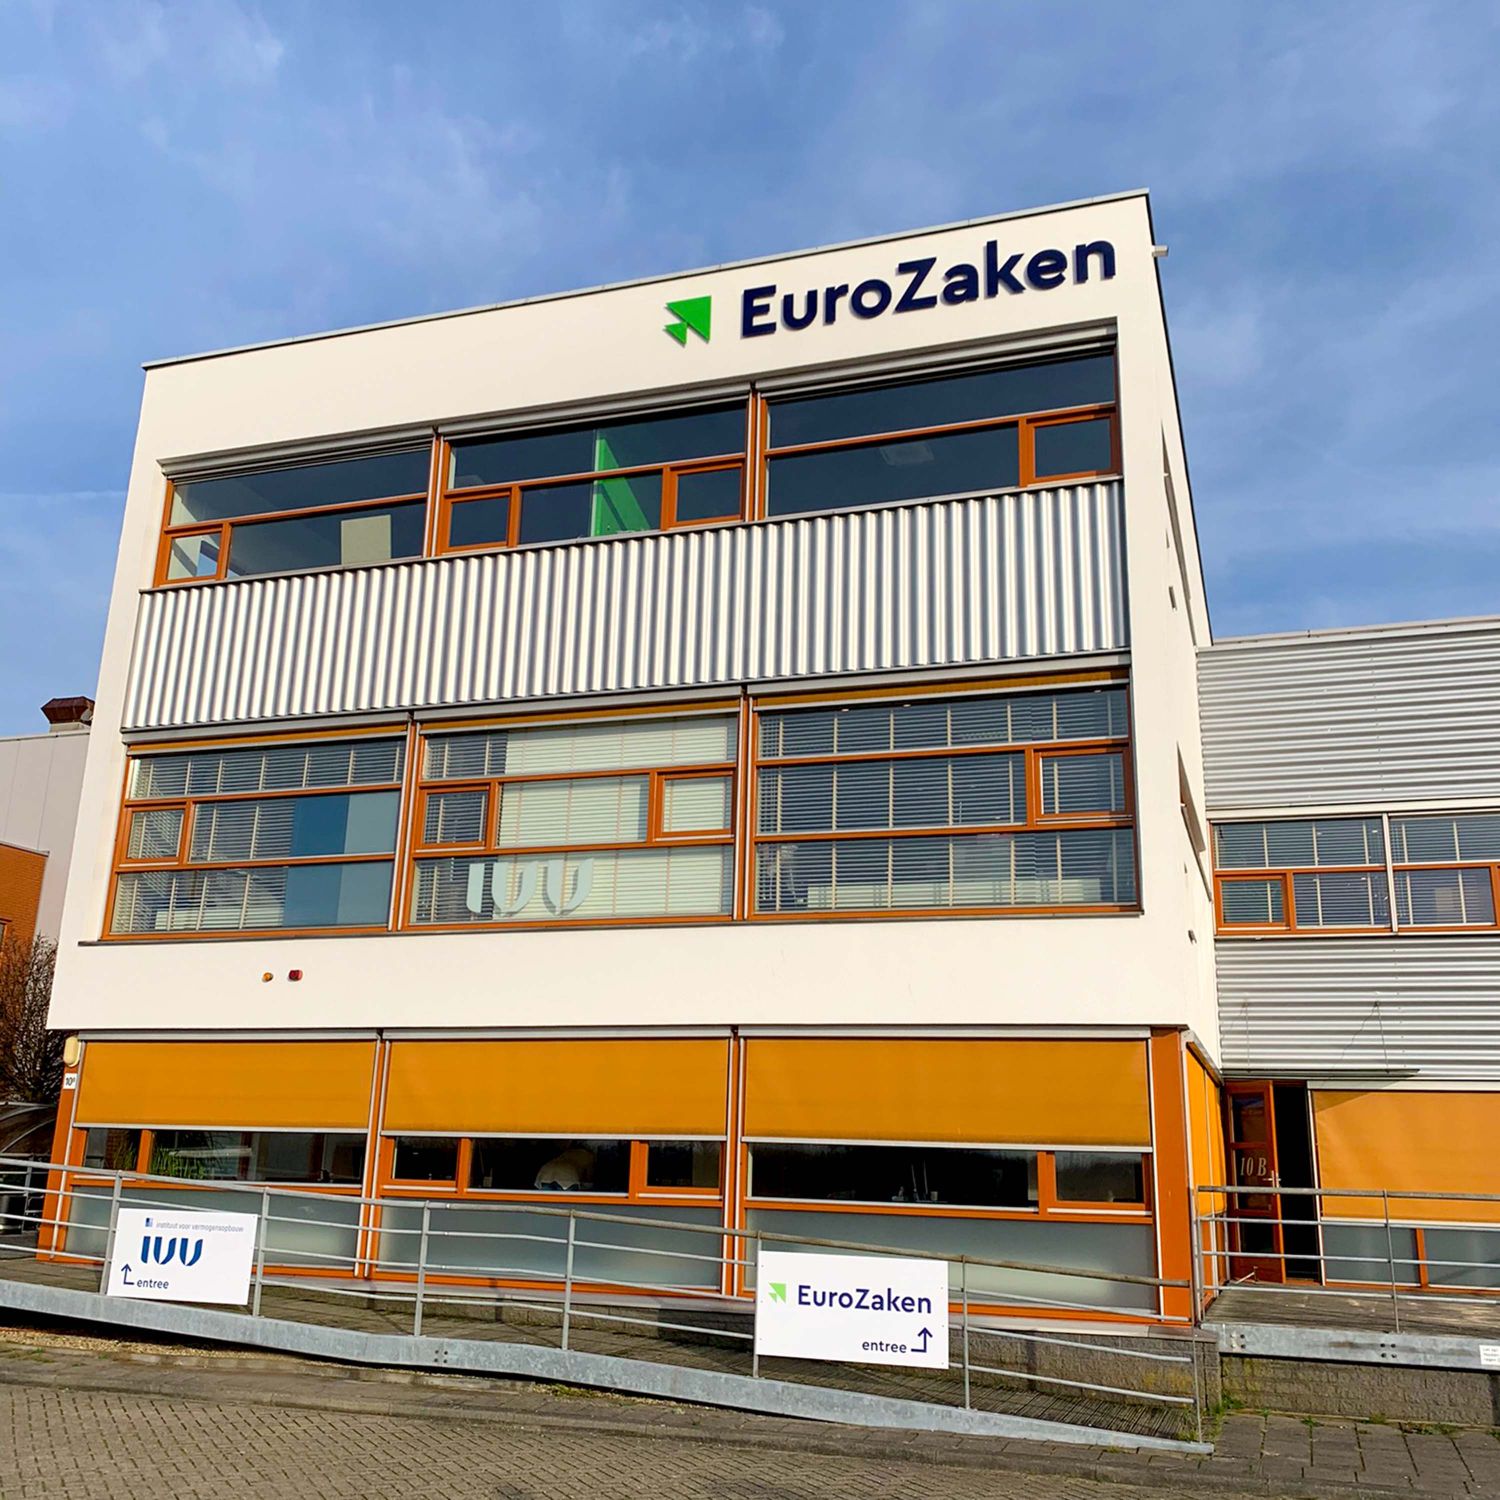 Bedrijfspand Eurozaken  in Maassluis voorzien van gevelsigning met Acrylaat freesletters van het bedrijfslogo.